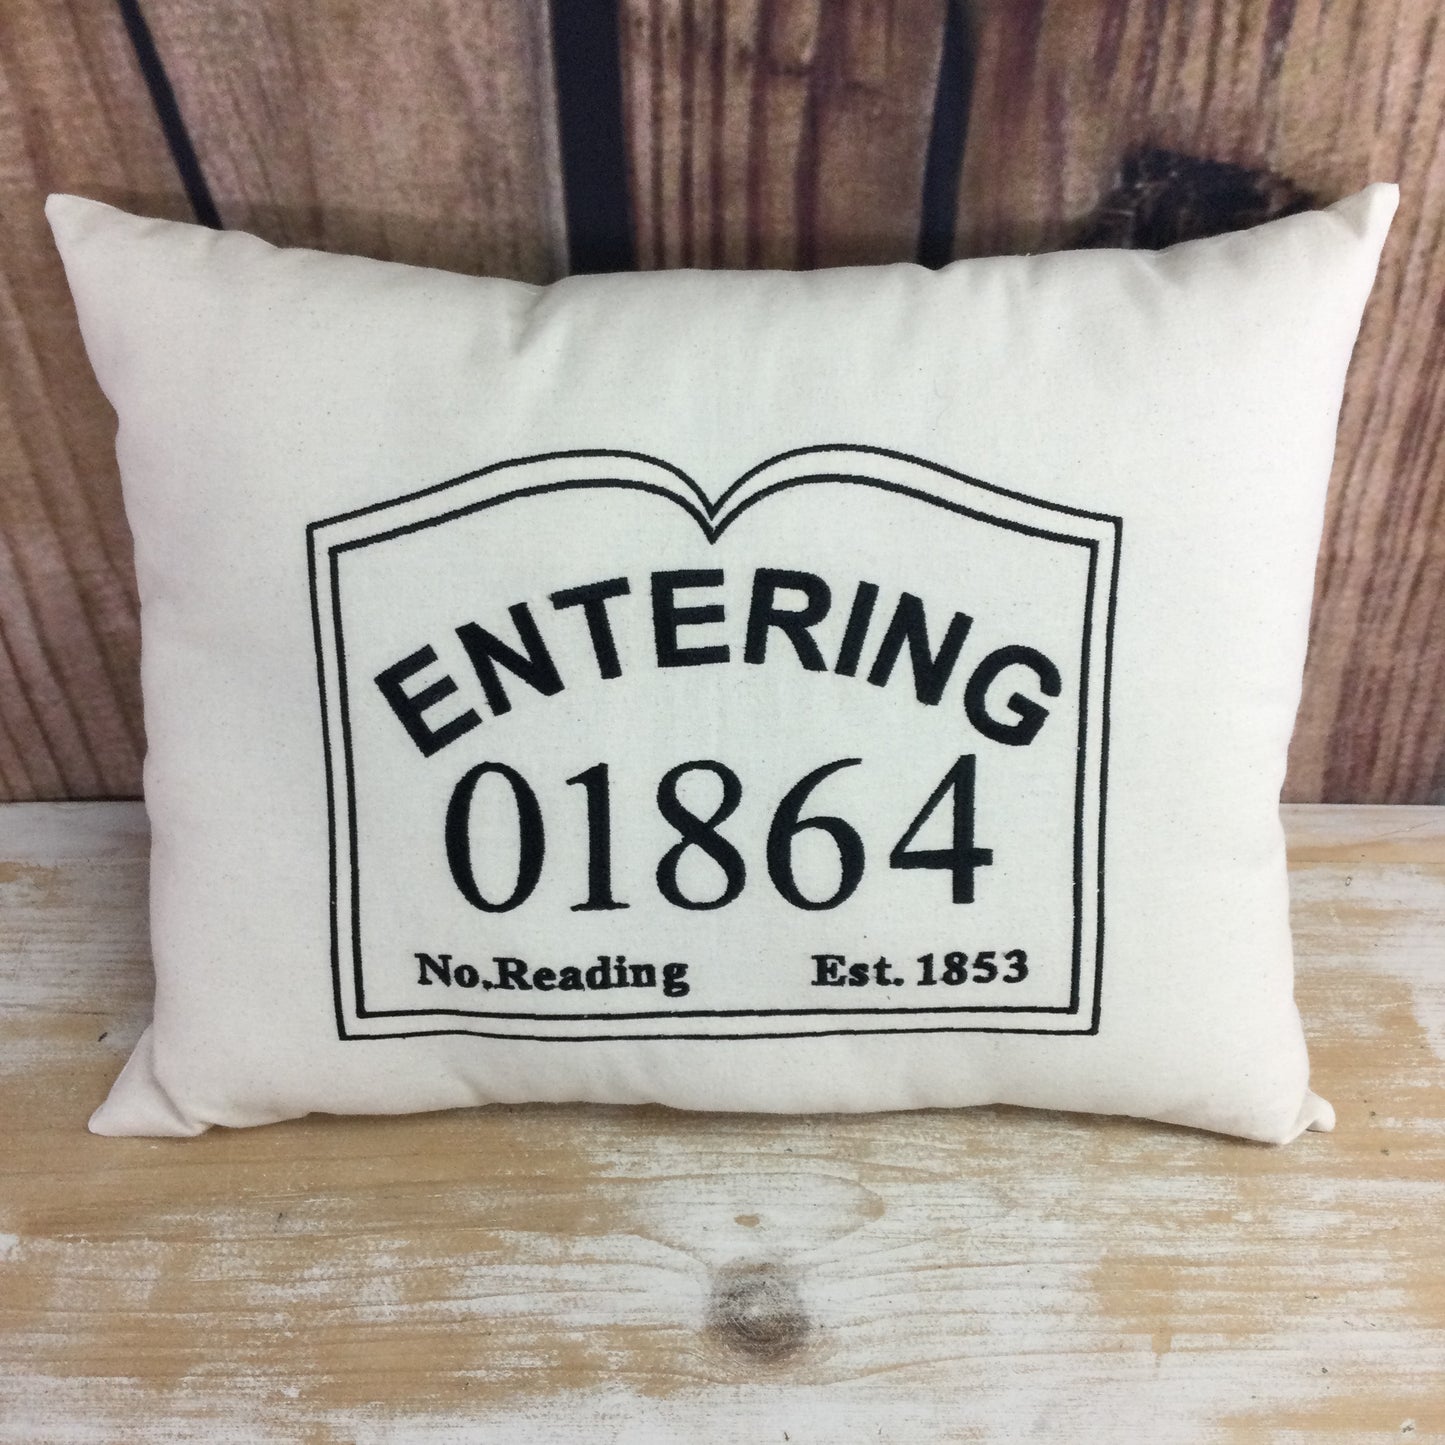 Zip Code Pillow - Entering 01864